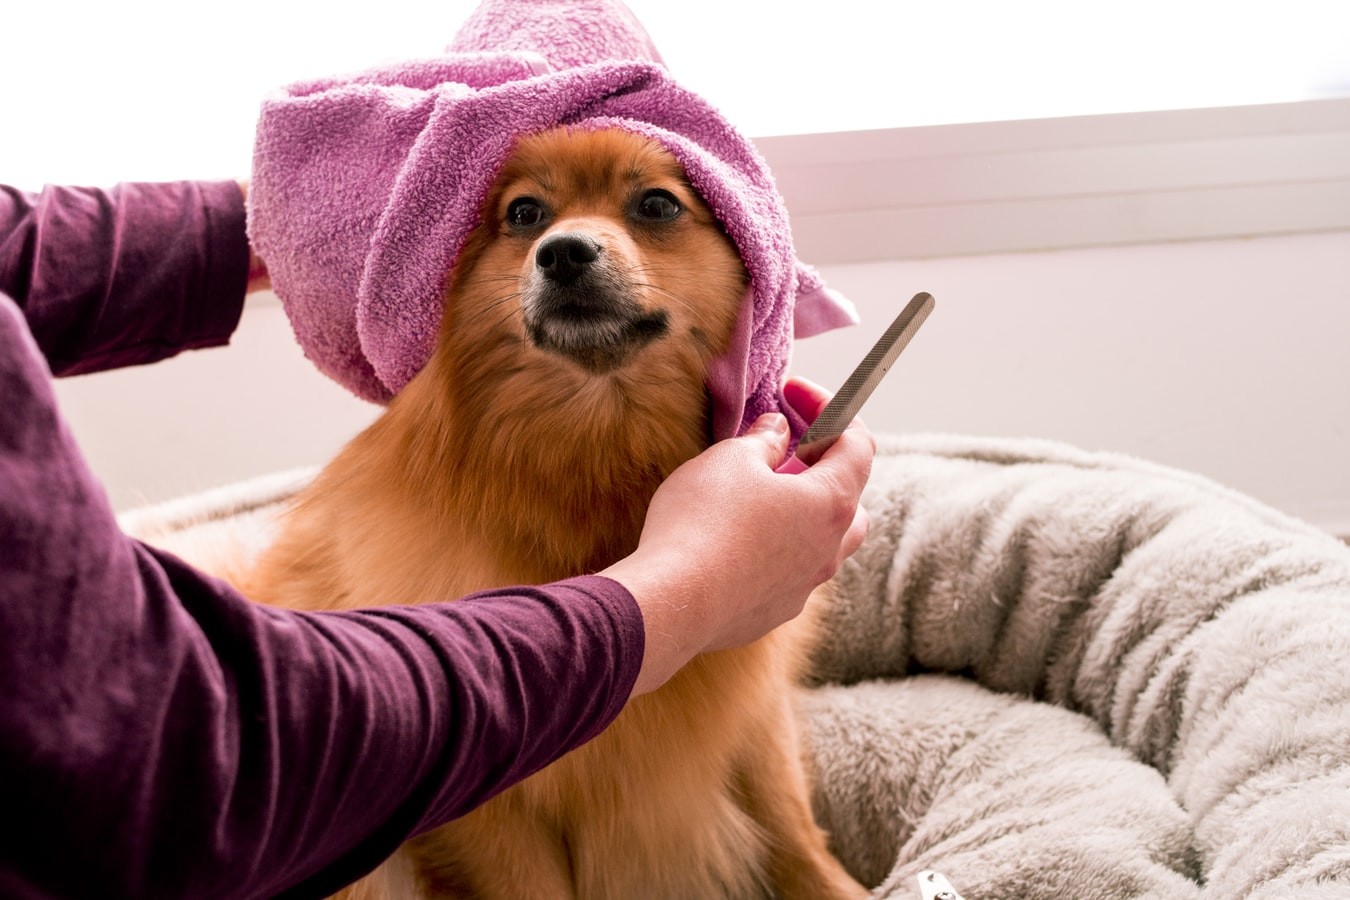 Часто ли выпадают волосы у собак?